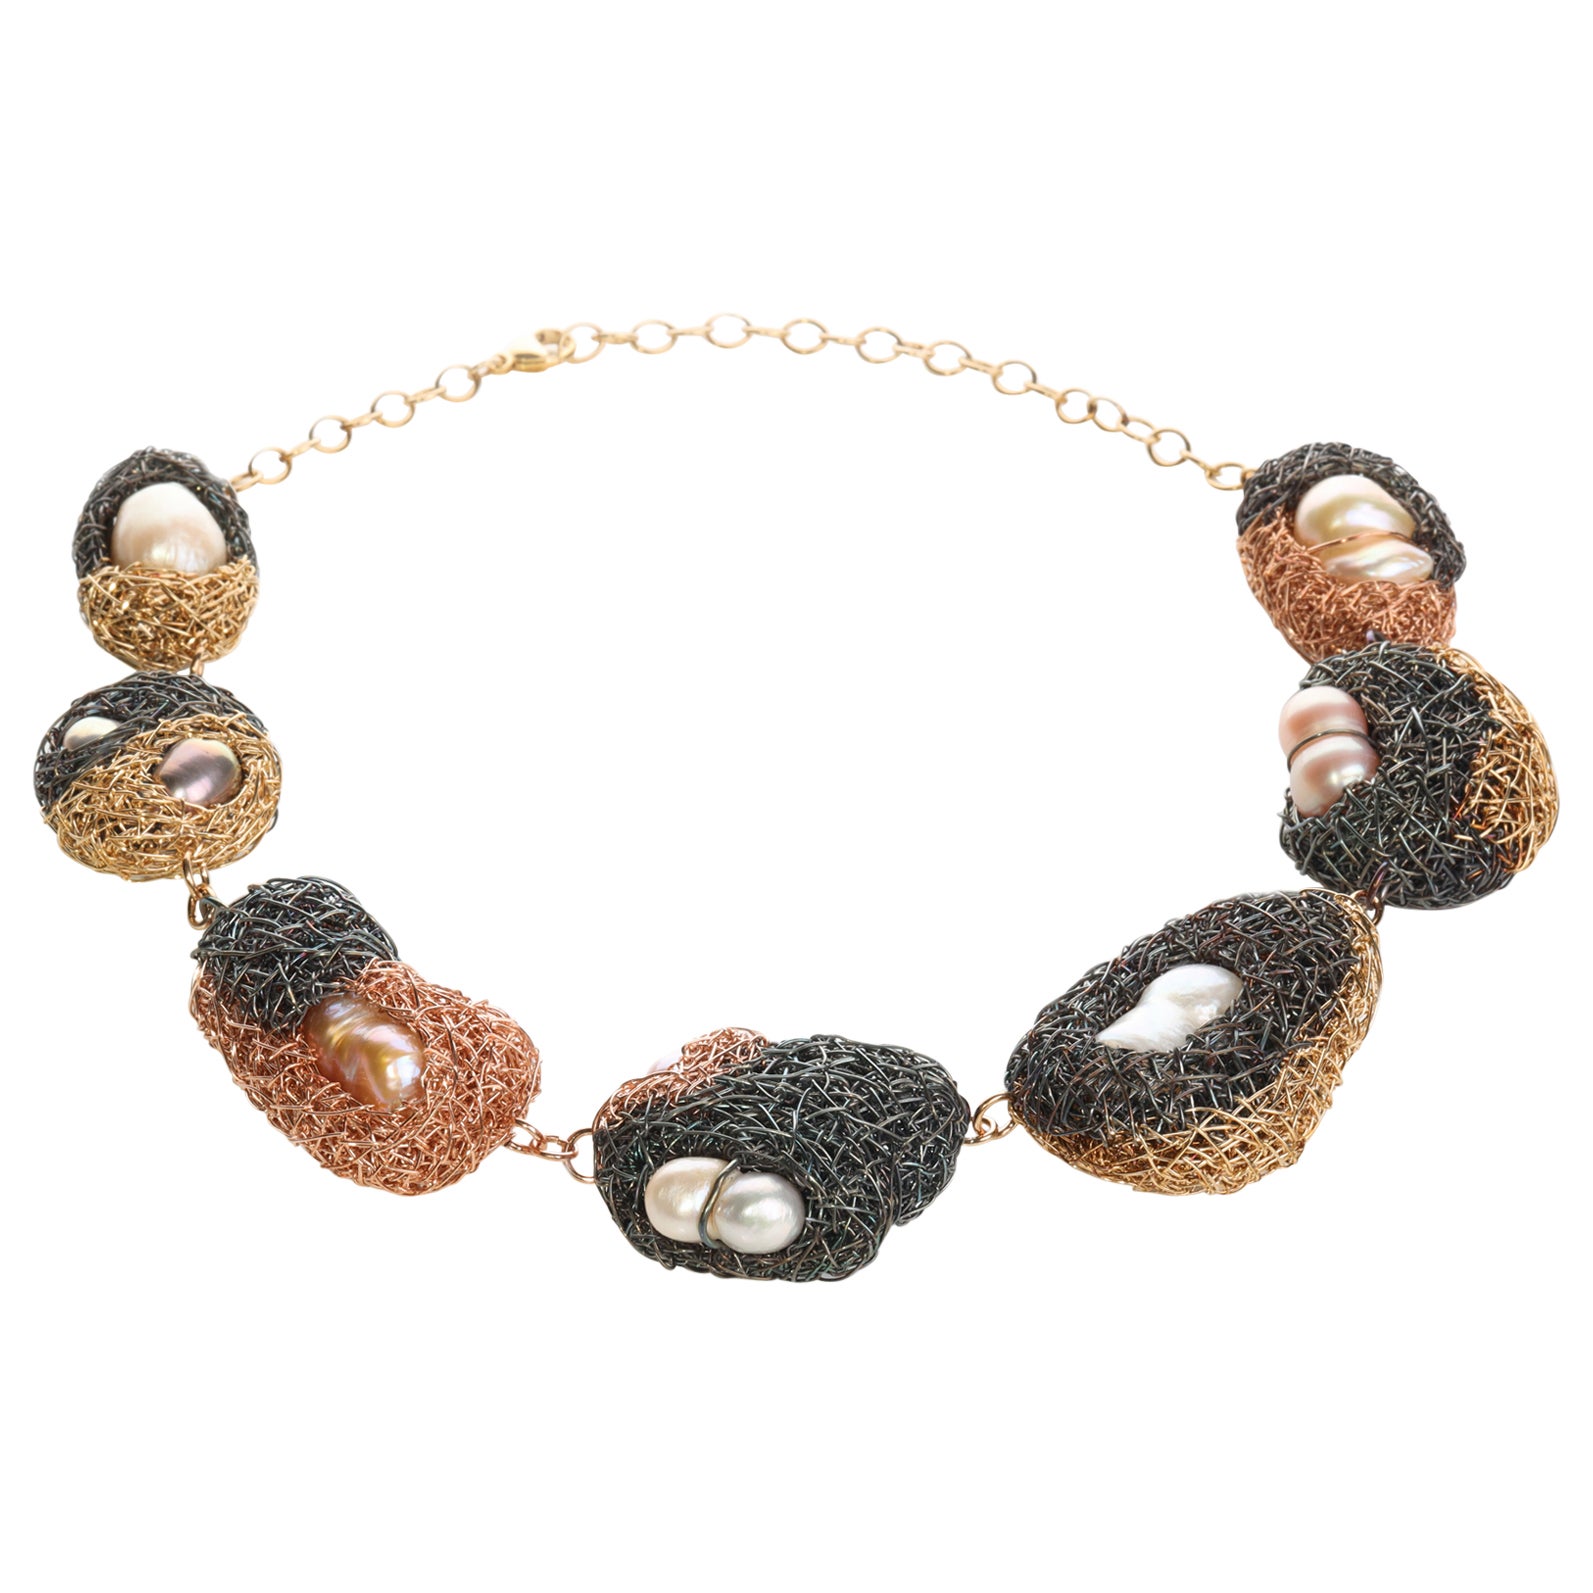 Einzigartige Statement-Halskette aus Perlen in verschiedenen Materialien des Künstlers